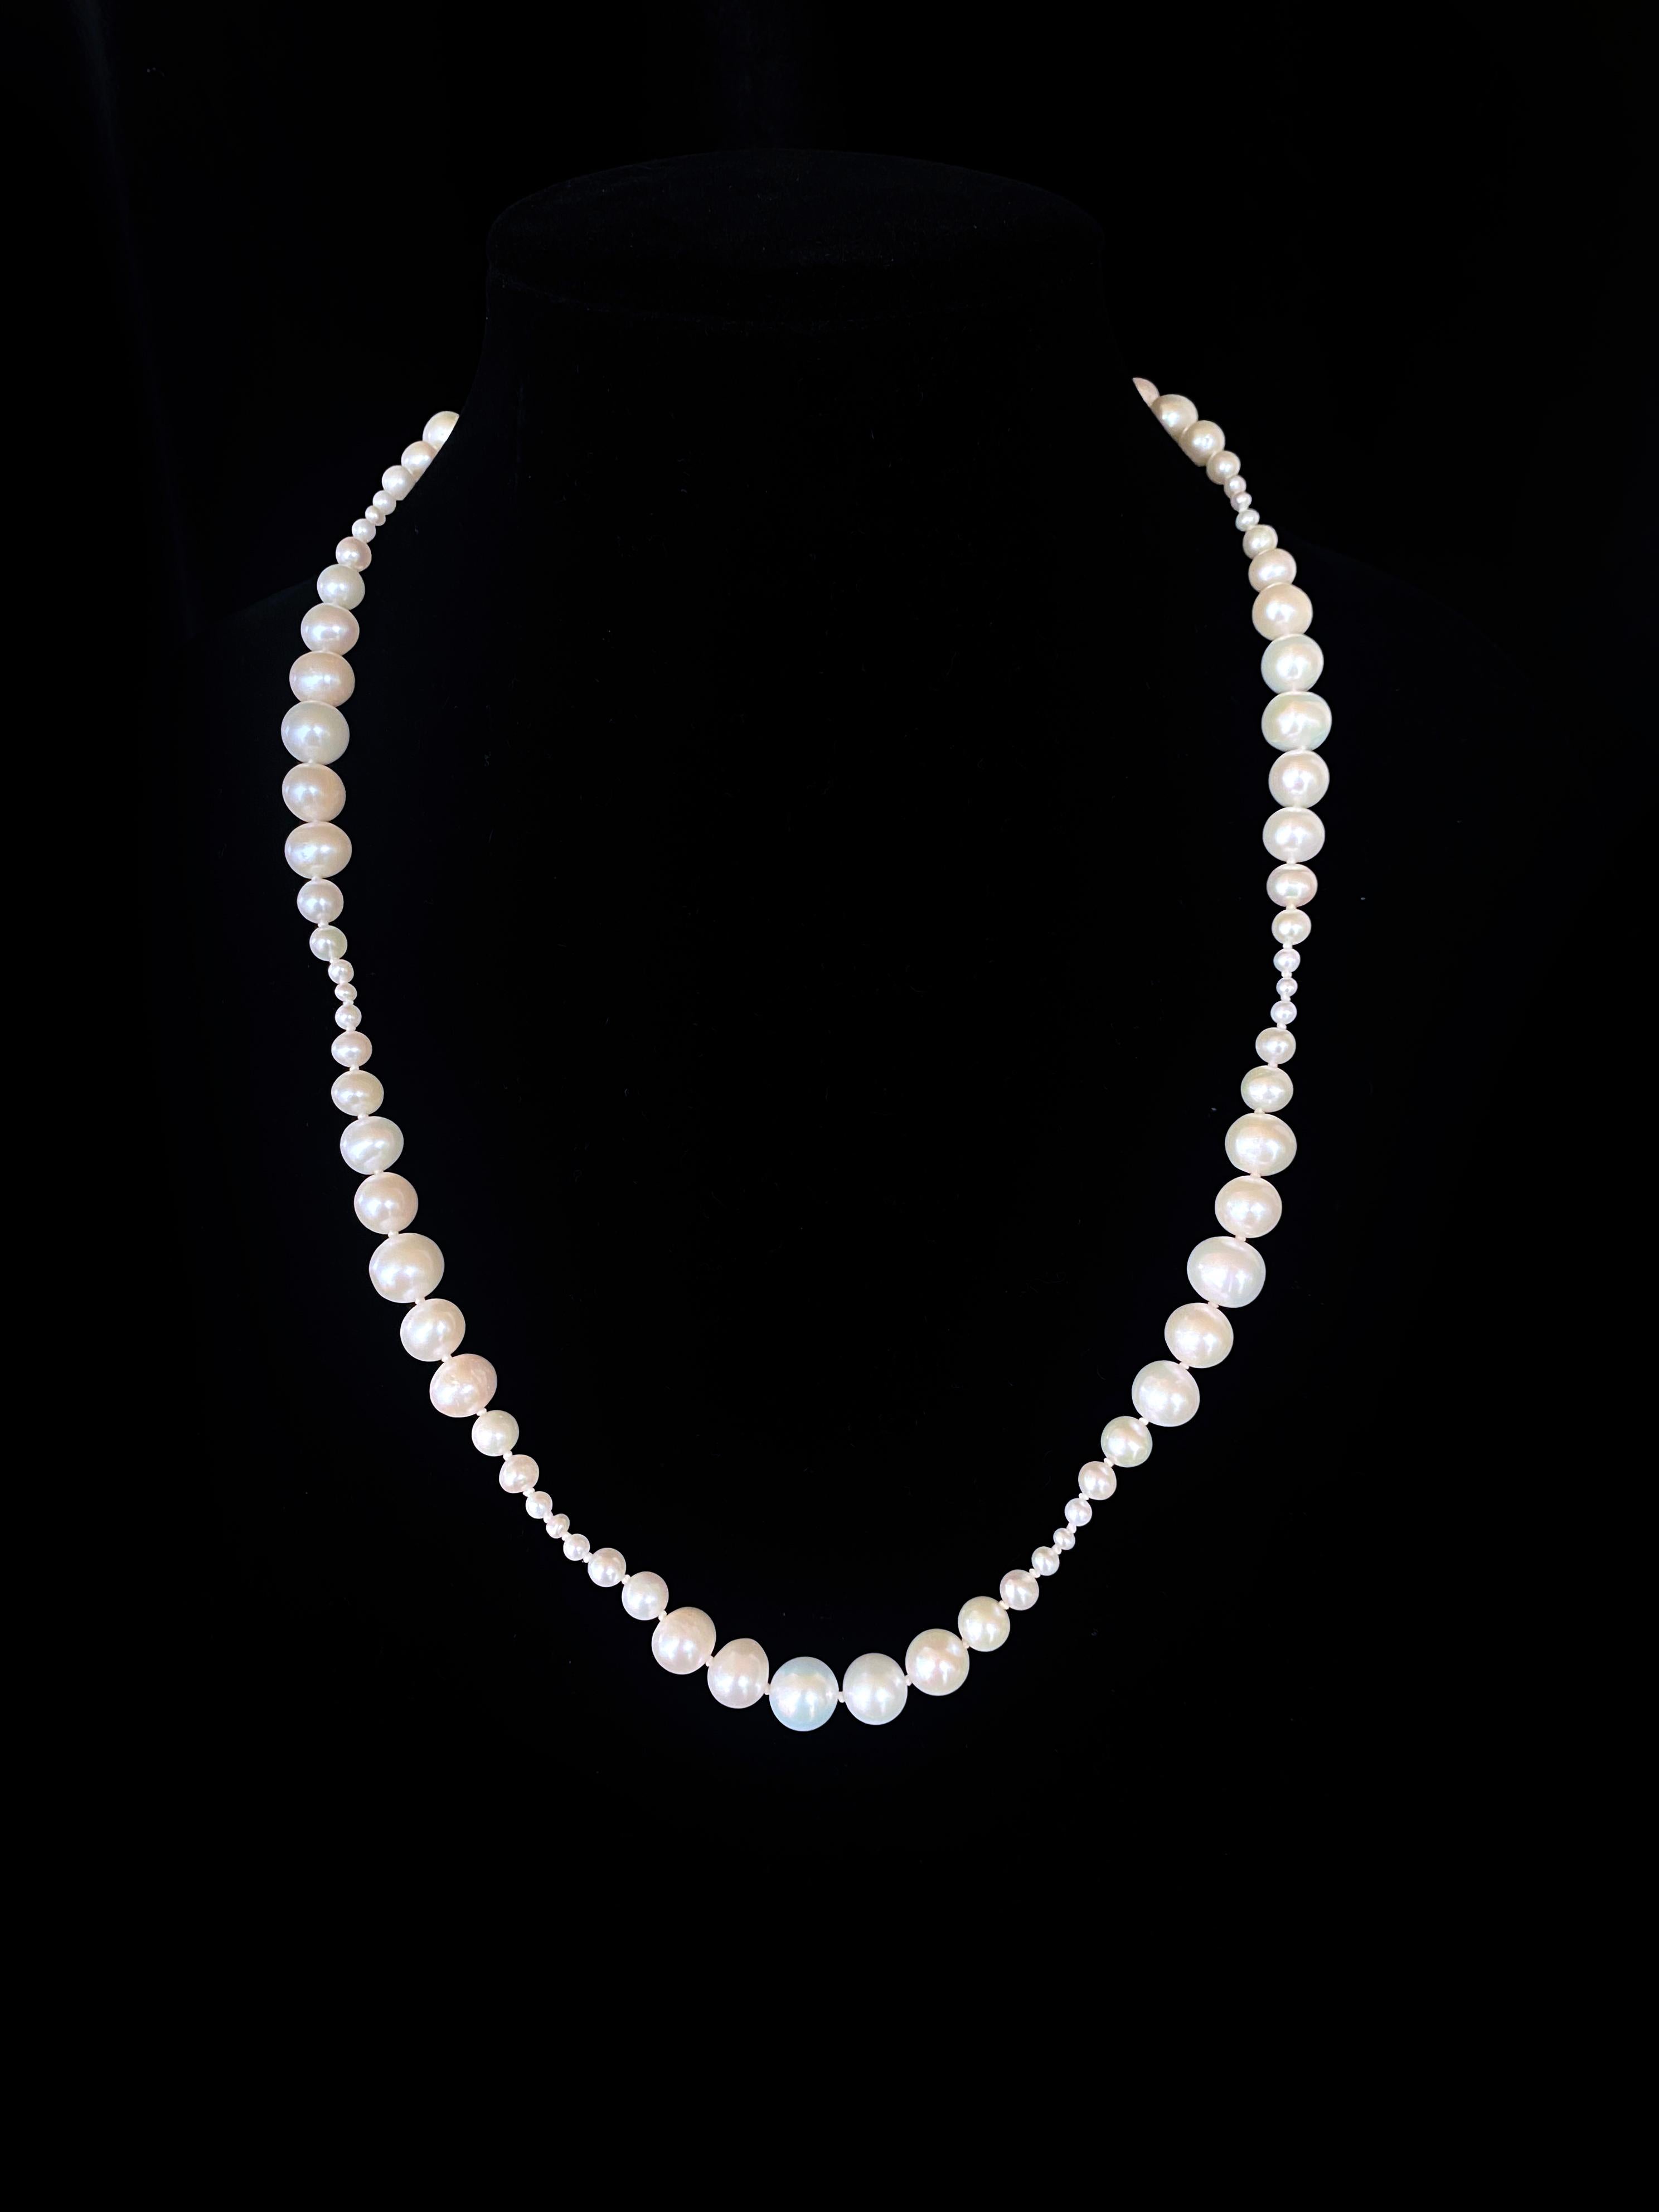 Made by Marina J. Diese Halskette ist aus hochglänzenden weißen Perlen gefertigt, die einen tollen irisierenden Schimmer aufweisen und zu einem einzigartigen Stück aufgereiht sind. Die verschieden großen Perlen (2mm bis 9mm) wurden von Marina